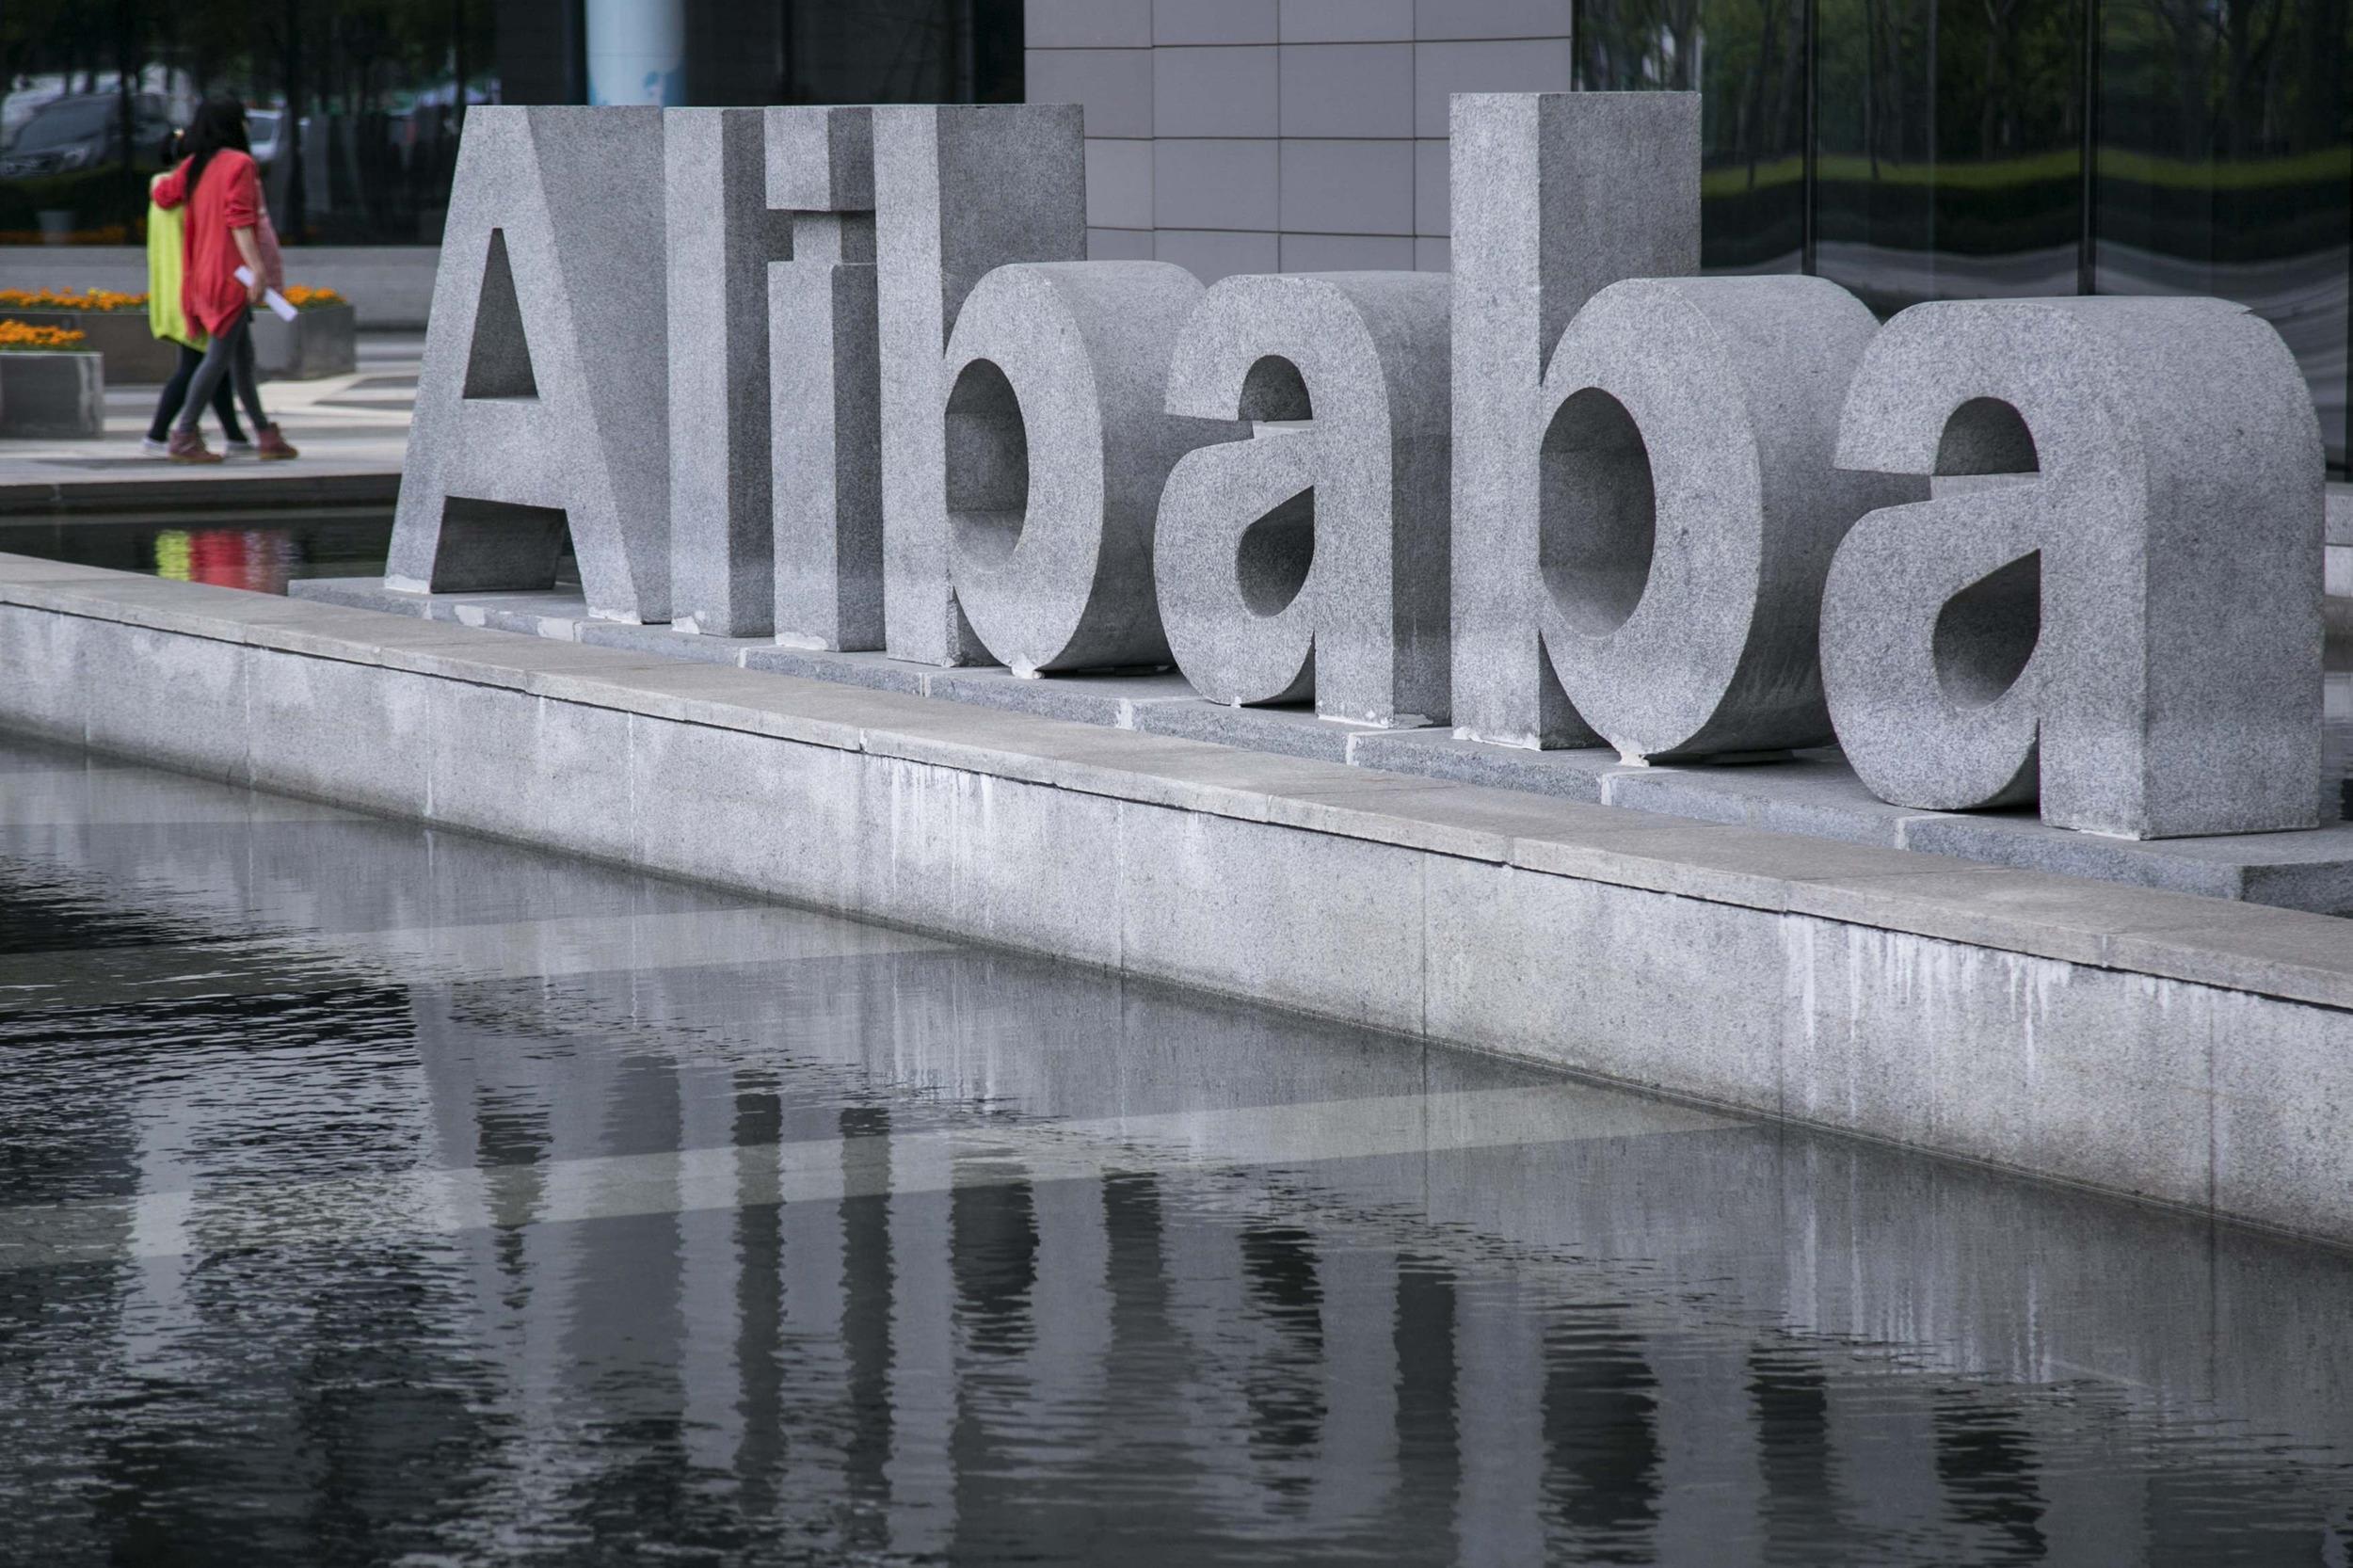 Alibaba shop